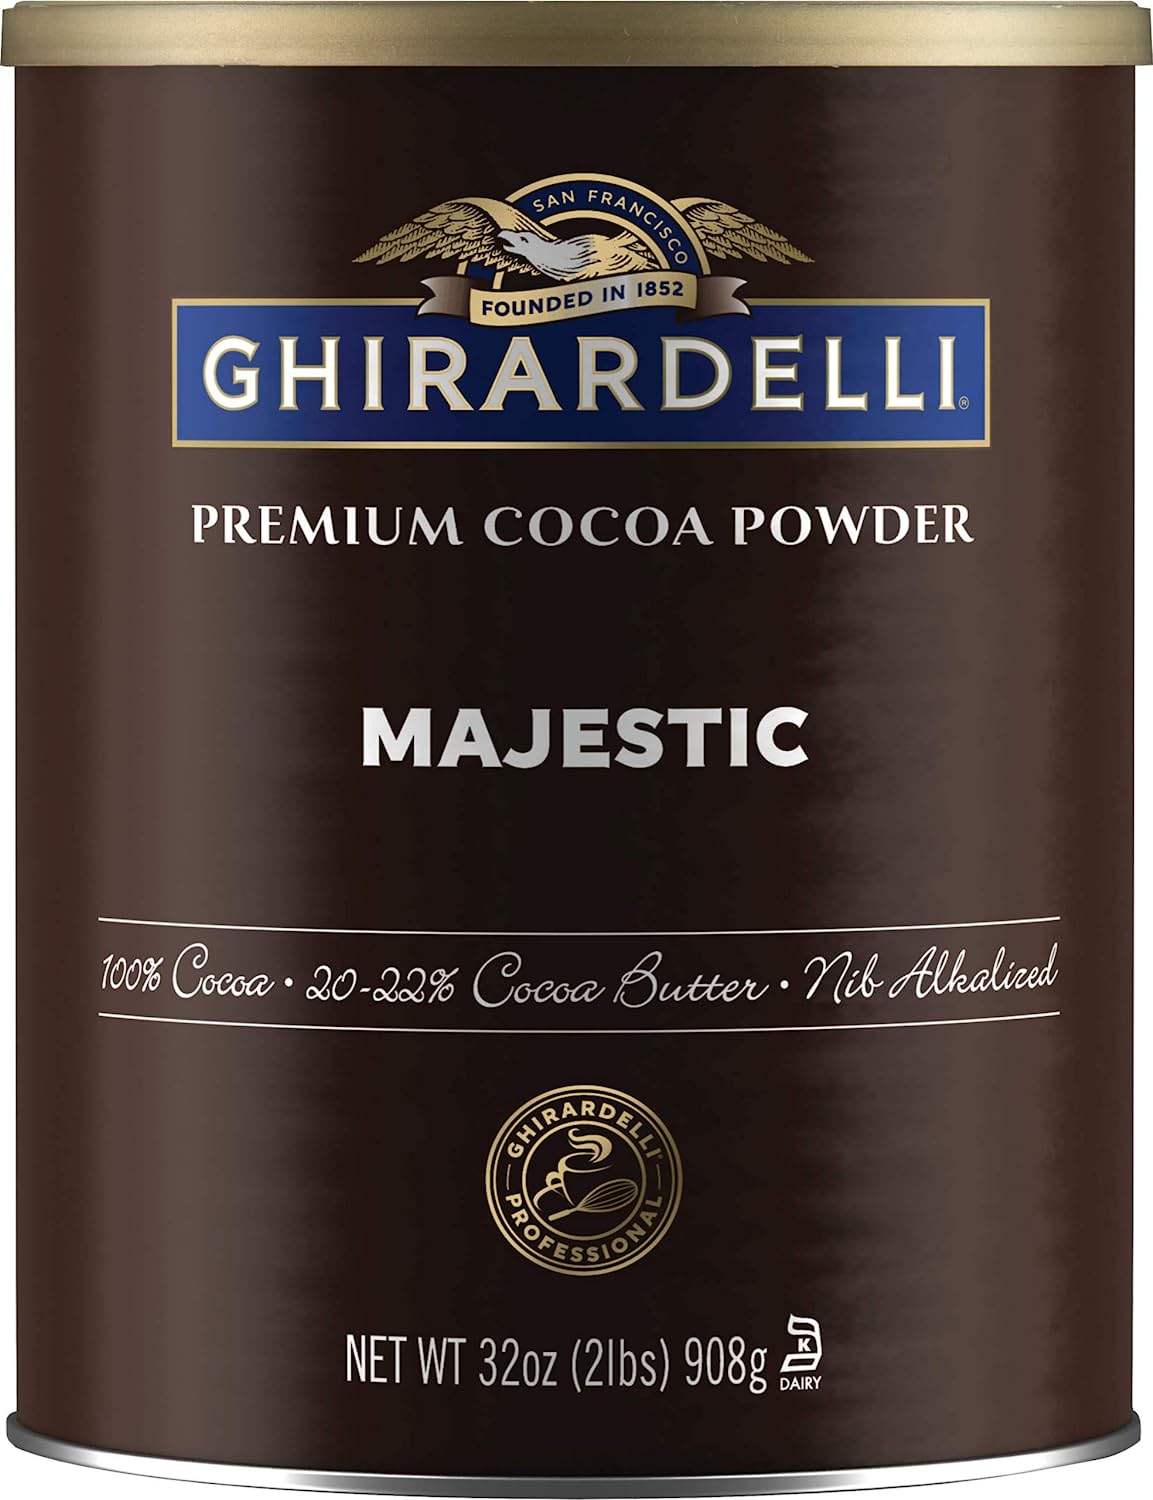 Ghirardelli Majestic Premium Cocoa Powder - 2 lb. Can